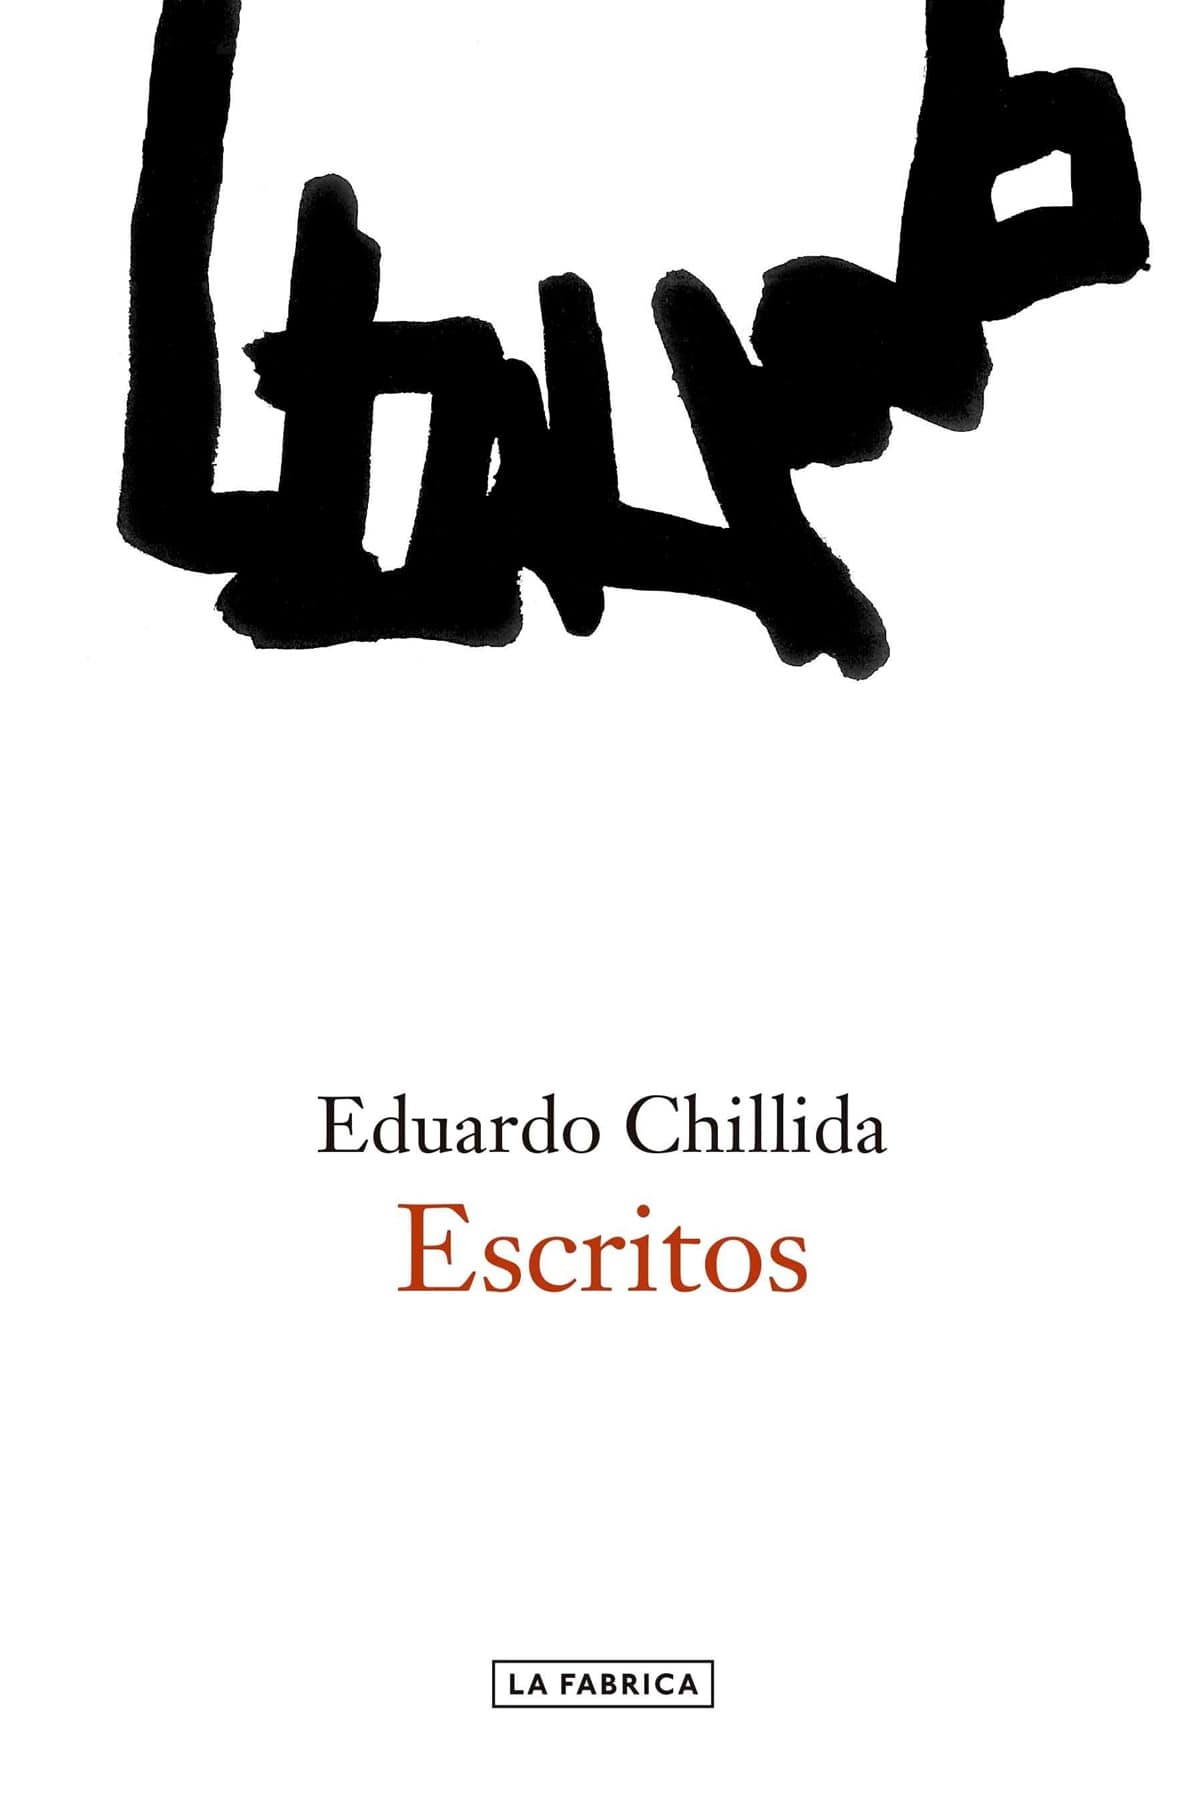 Escritos de Eduardo Chillida